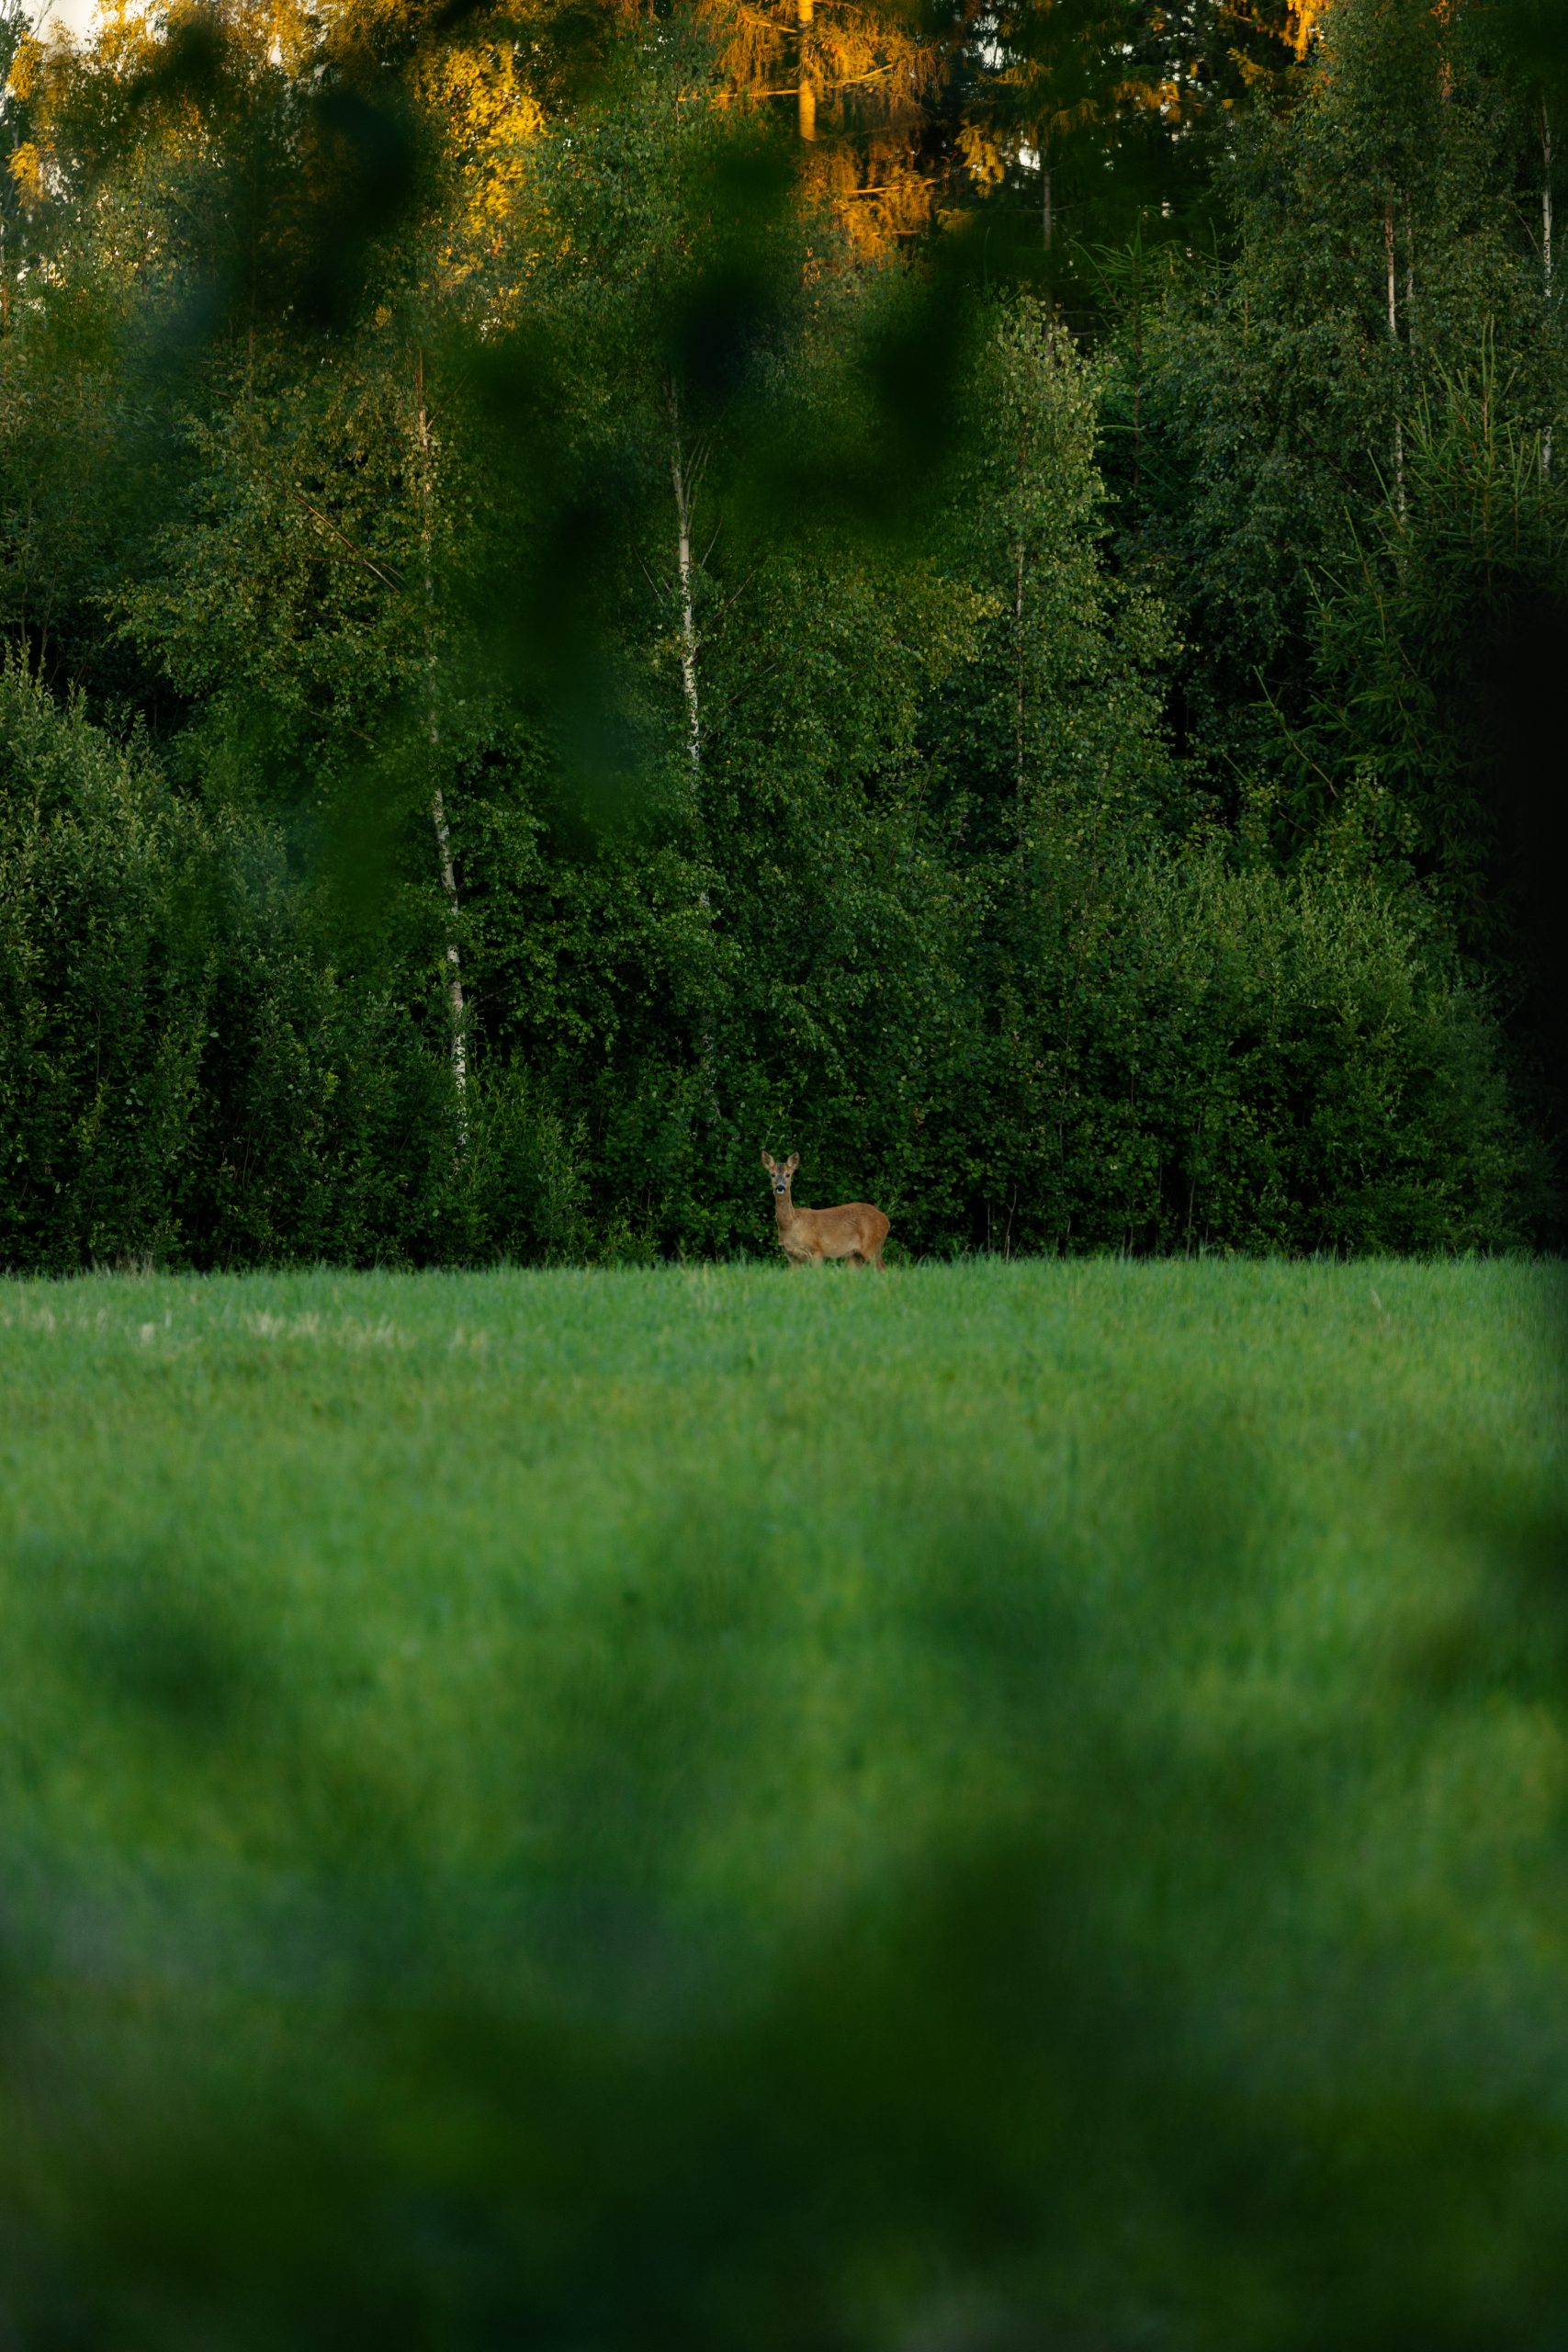 deer in green field